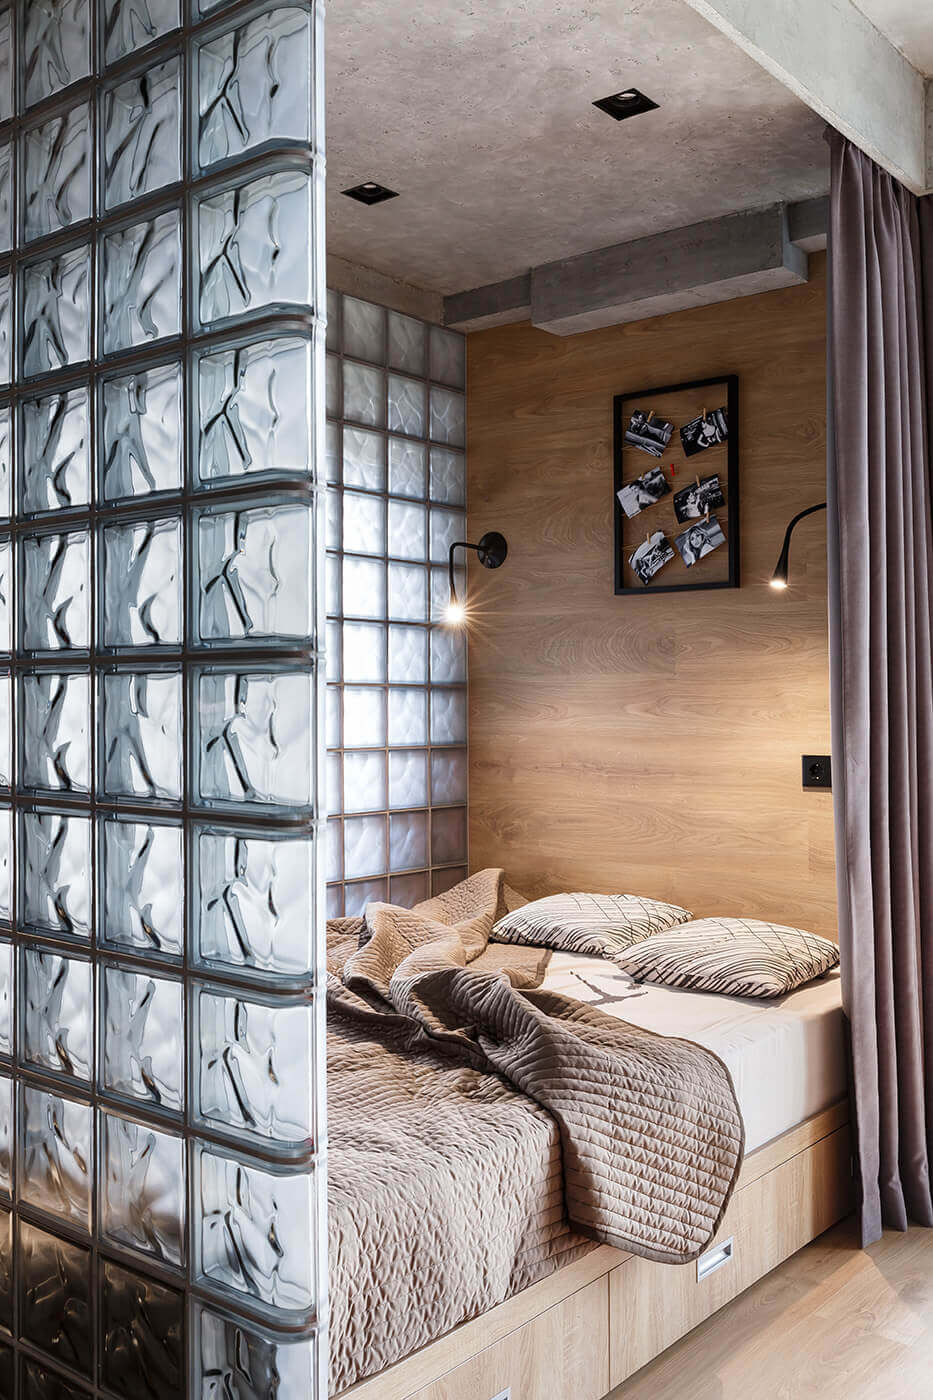 Прозрачная перегородка из стеклоблоков для приватности спальни. выдвижные ящики под кроватью служат для хранения белья - проекты Setus Design